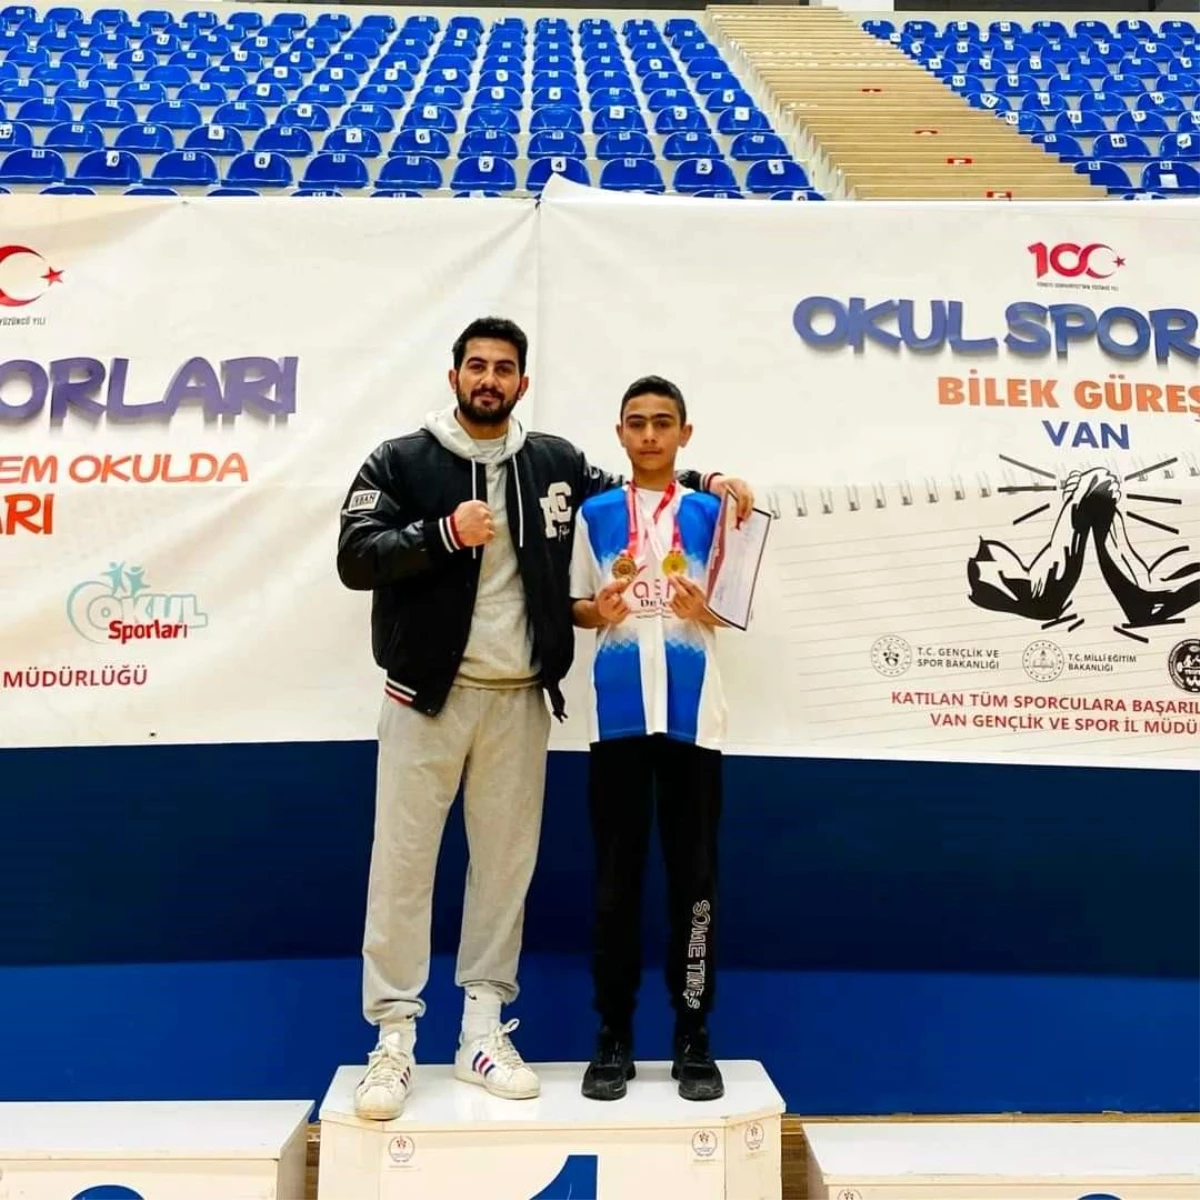 Ahlatlı öğrenci Simar Sert, bilek güreşi turnuvasında birinci oldu